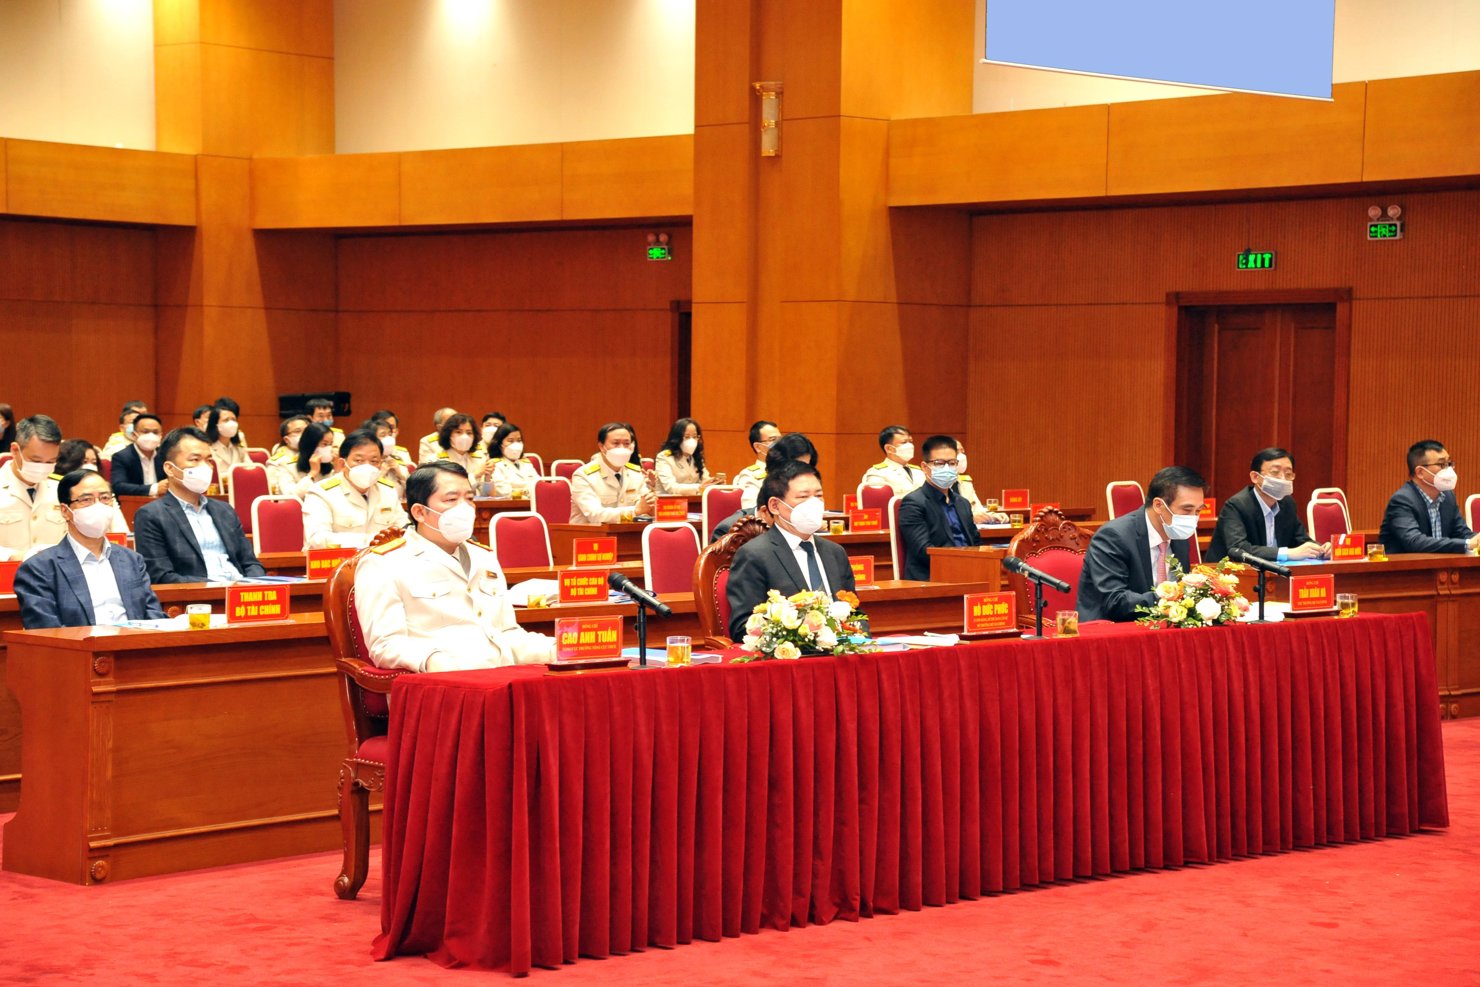 Các đại biểu tham dự Hội nghị tại điểm cầu Tổng cục Thuế